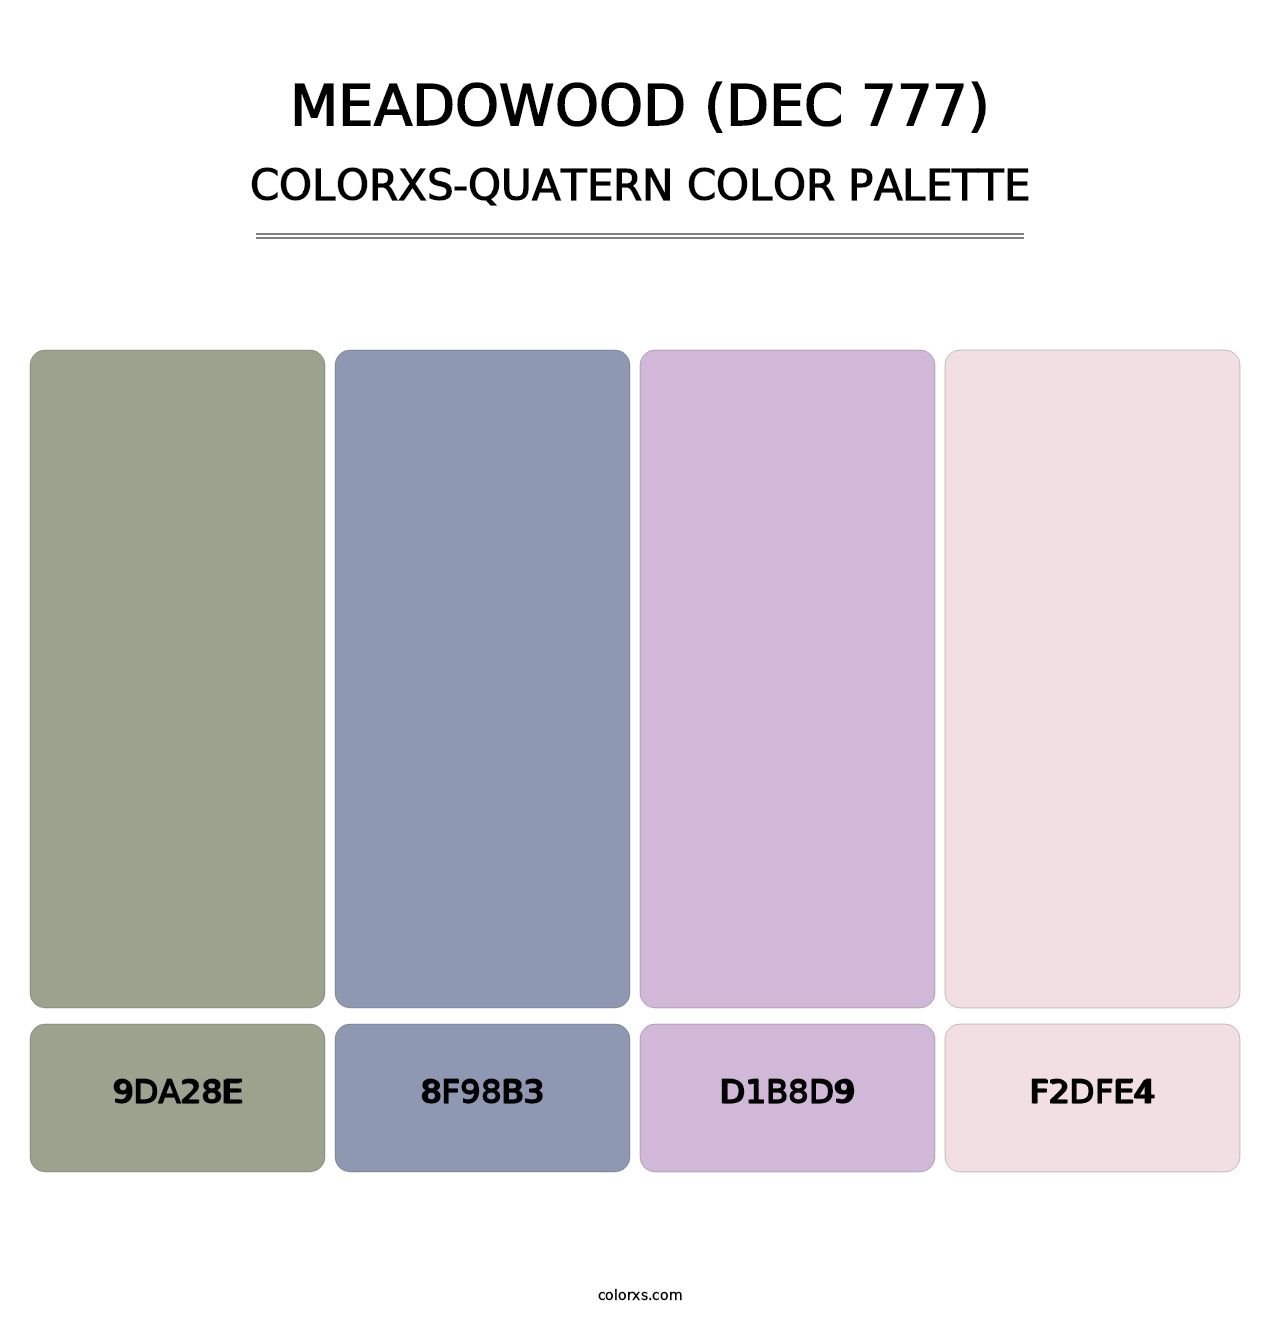 Meadowood (DEC 777) - Colorxs Quatern Palette